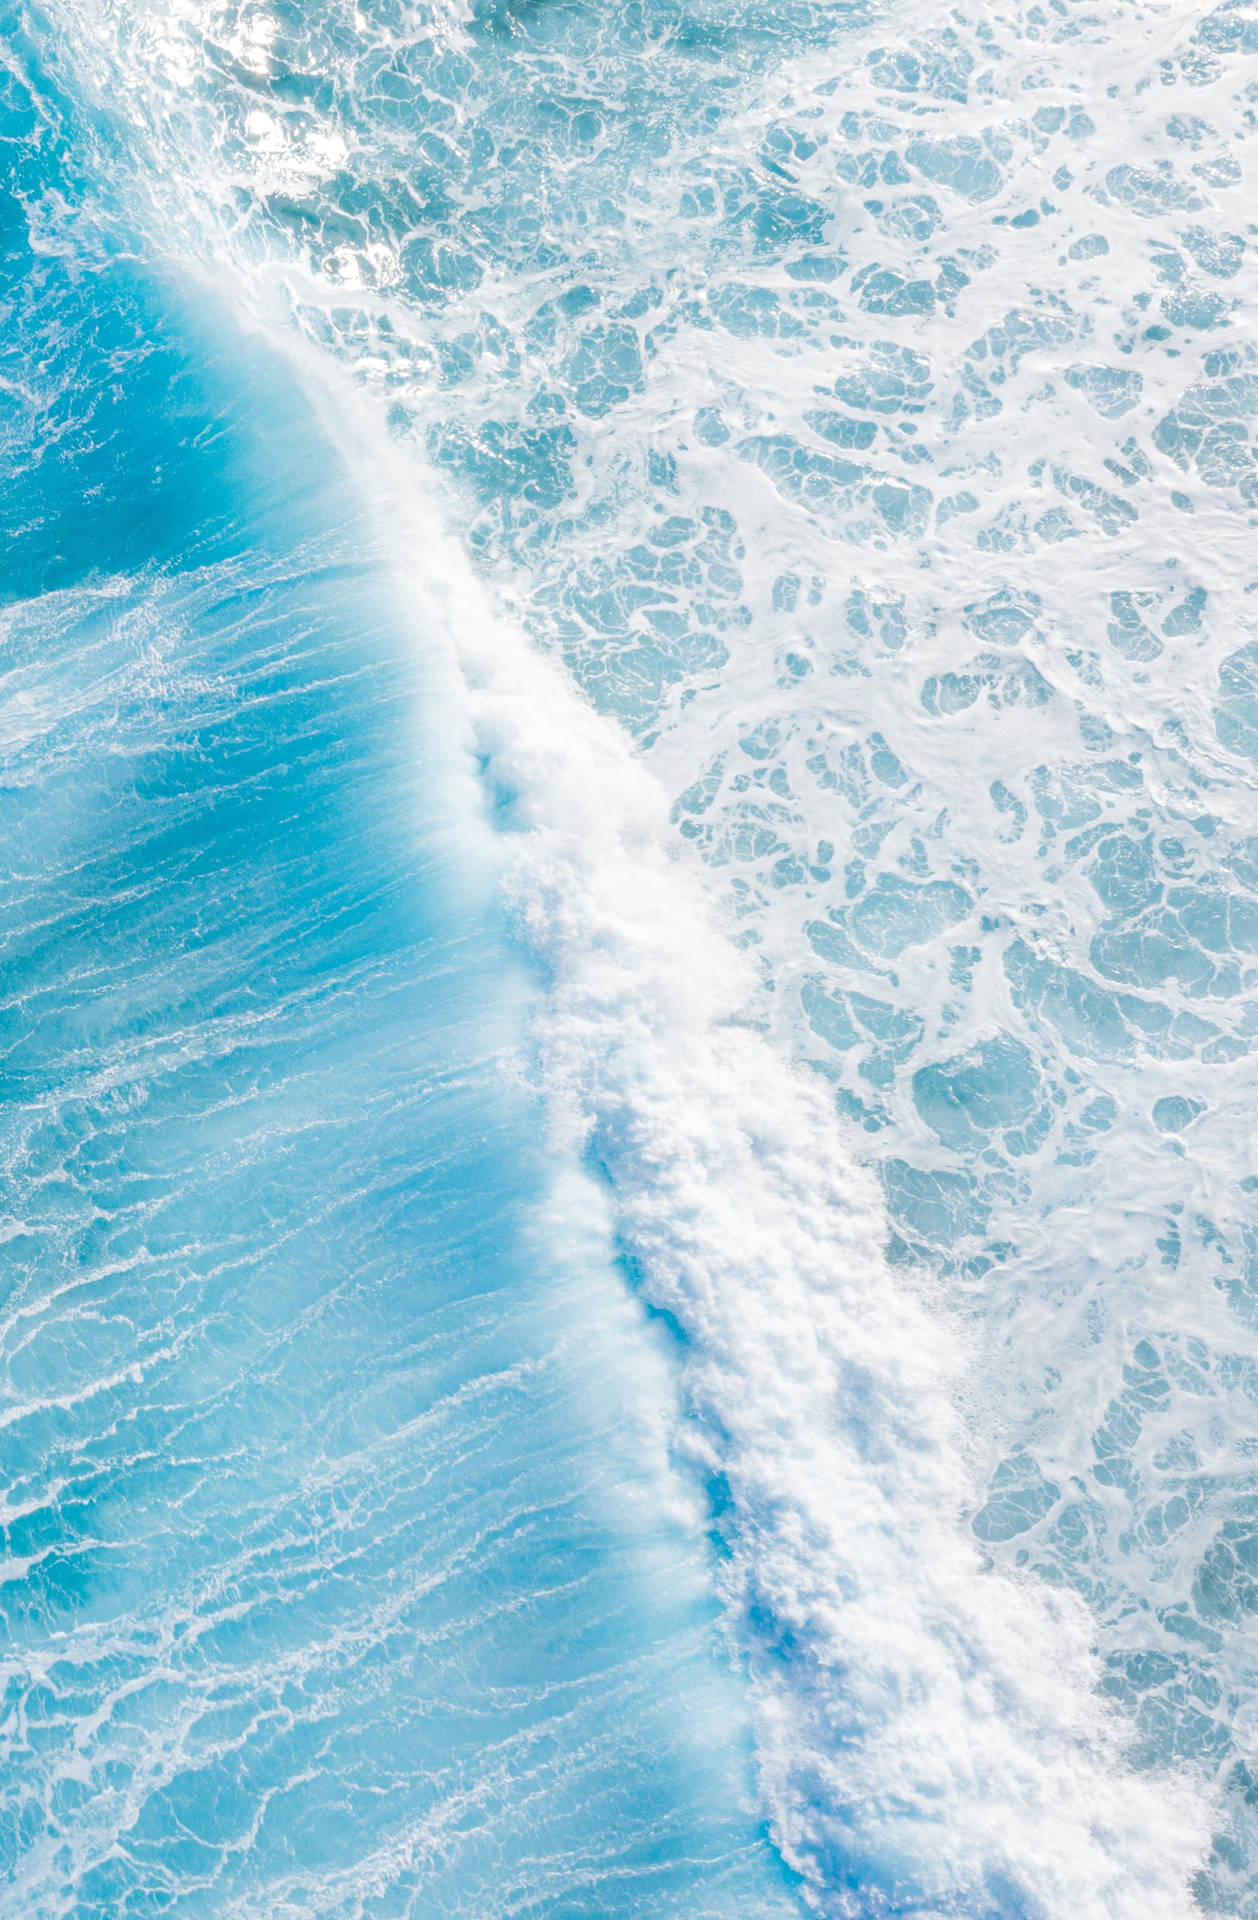 49+] Ocean Wave iPhone Wallpaper - WallpaperSafari